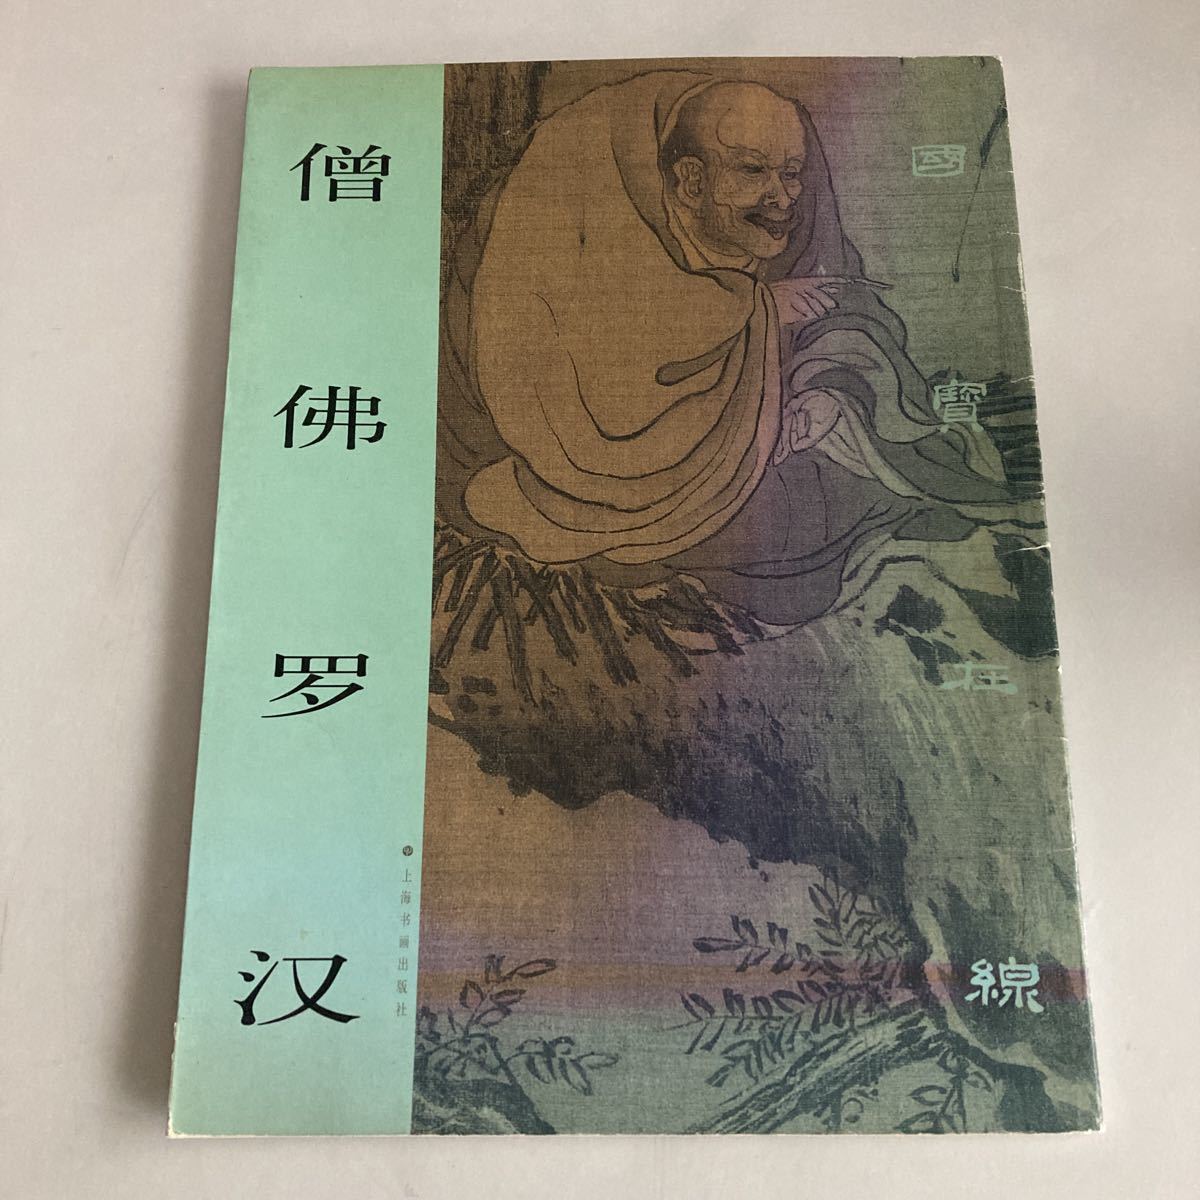 ◇ Trésors nationaux en ligne Bouddha moine Arhat Bouddha moine Appréciation de l'art chinois et de la peinture chinoise ♪GM01, Peinture, Livre d'art, Collection, autres